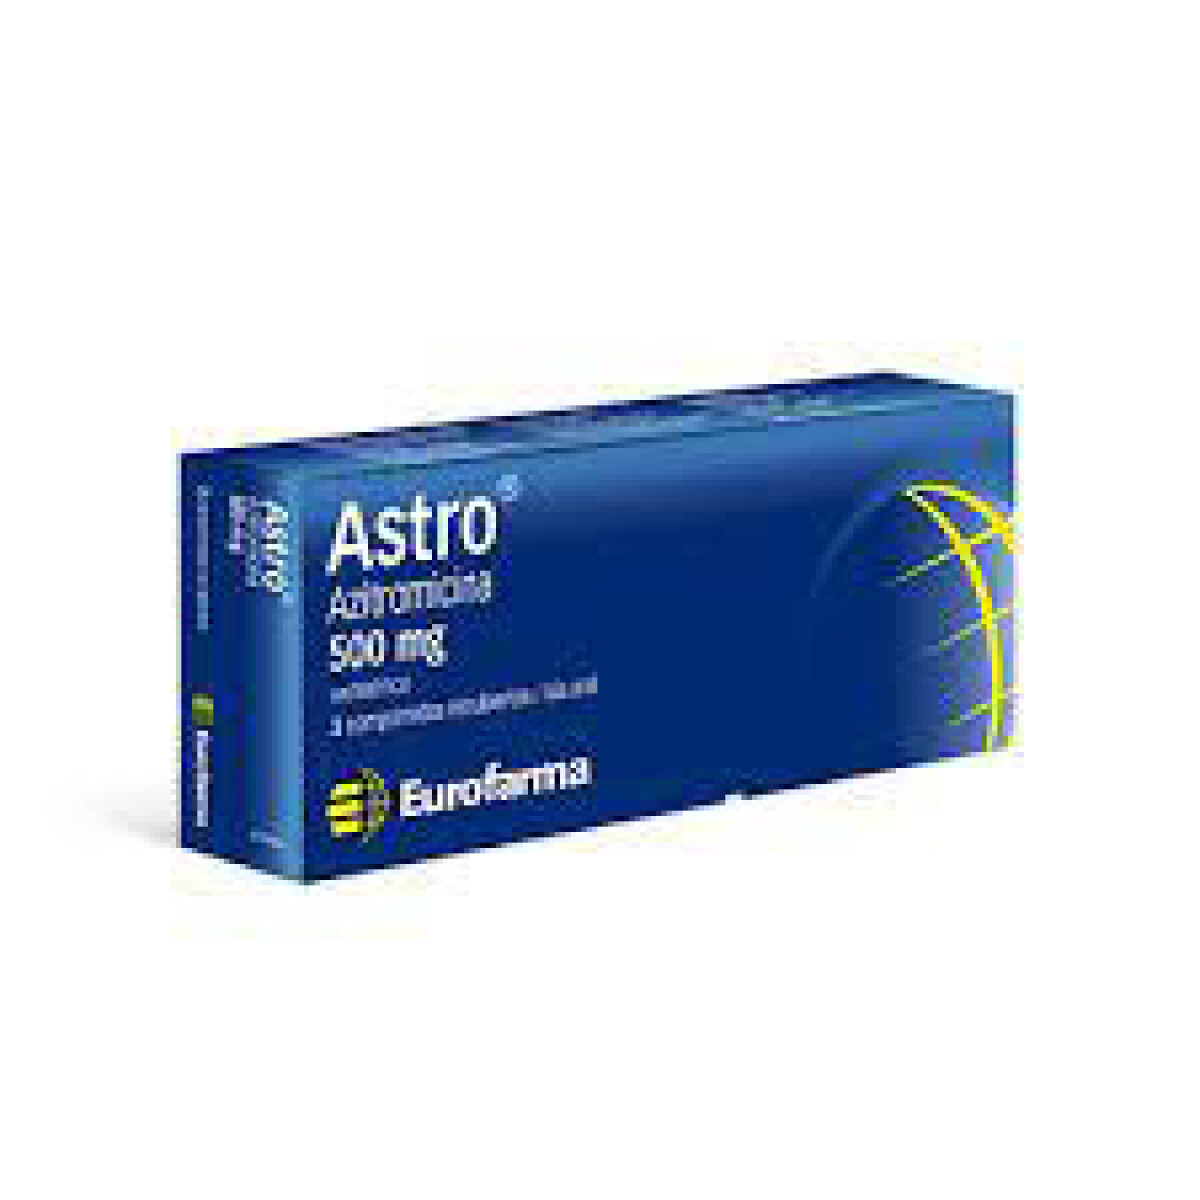 Astro 500 Mg x 3 COM 